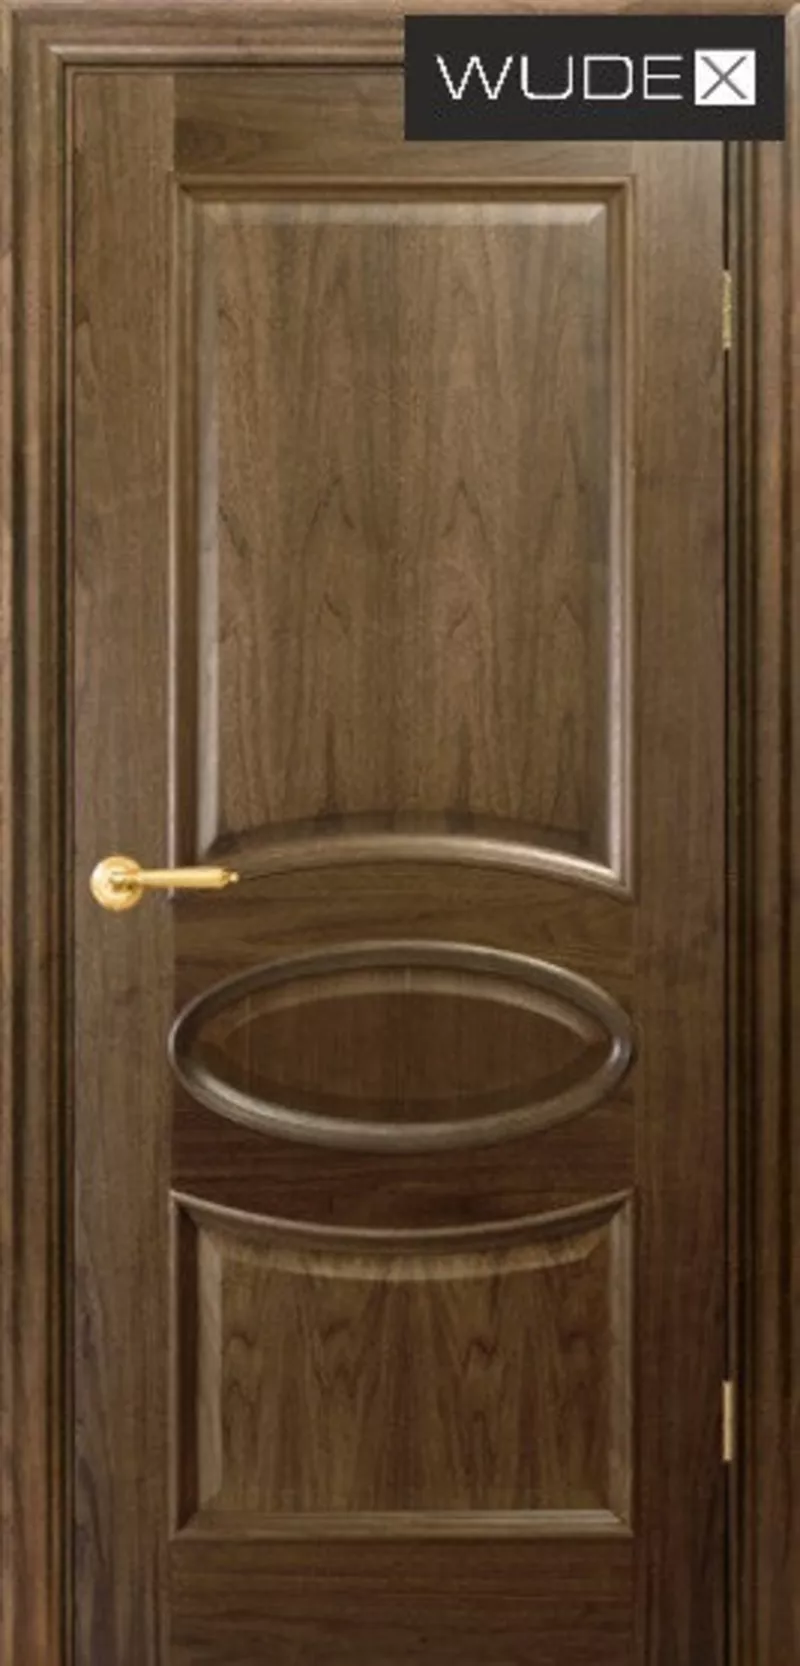 Двери межкомнатные WUDEX (ВУДЕКС двери) - шпон натуральный 4